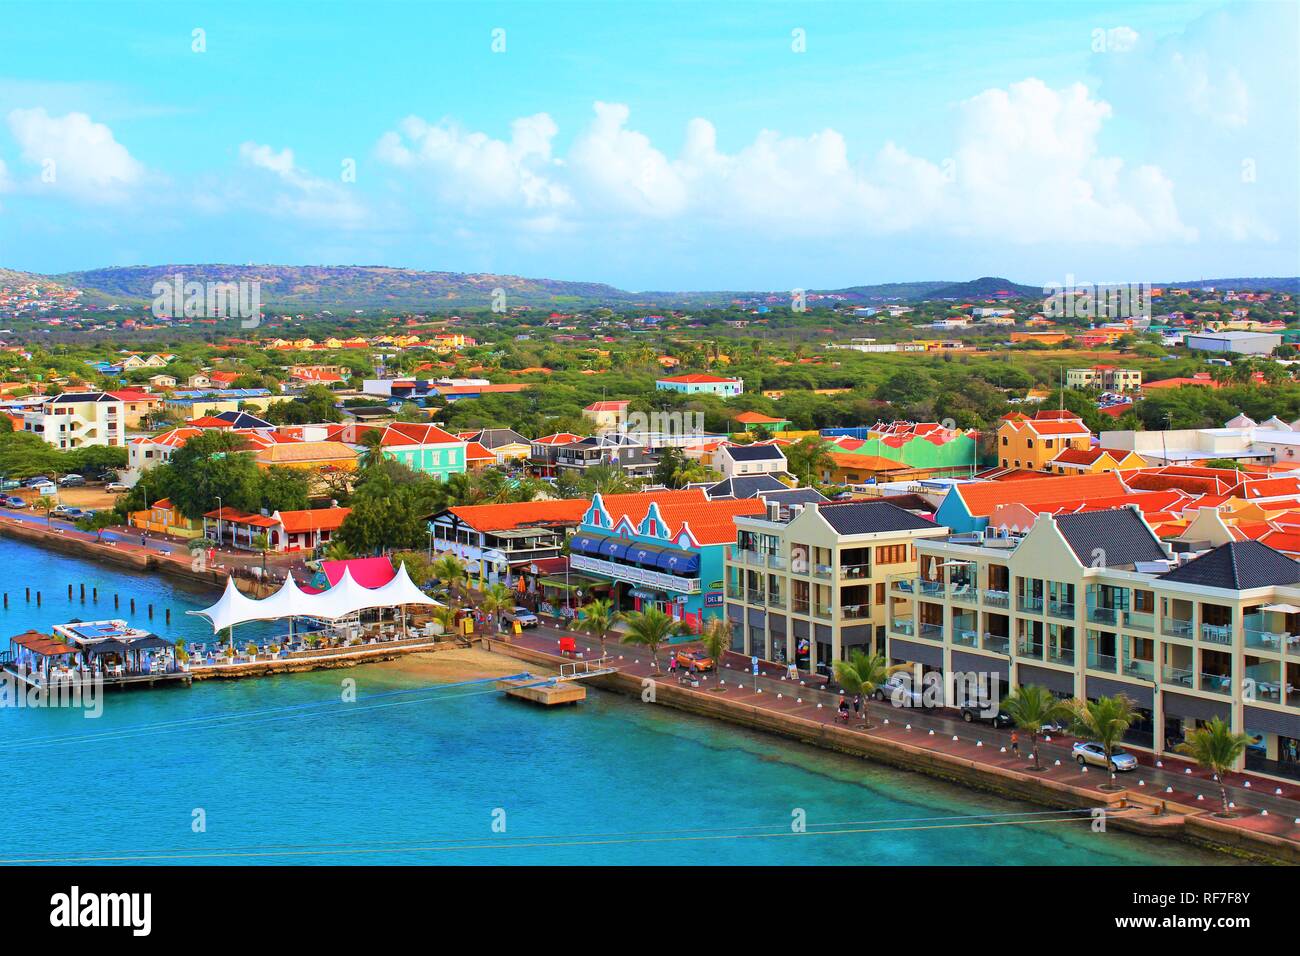 Kralendijk, Bonaire, Karibik - 22. Februar 2018: Ein Blick über die Hauptstadt Kralendijk Bonaire, von der ein Kreuzfahrtschiff im Hafen angedockt genommen Stockfoto